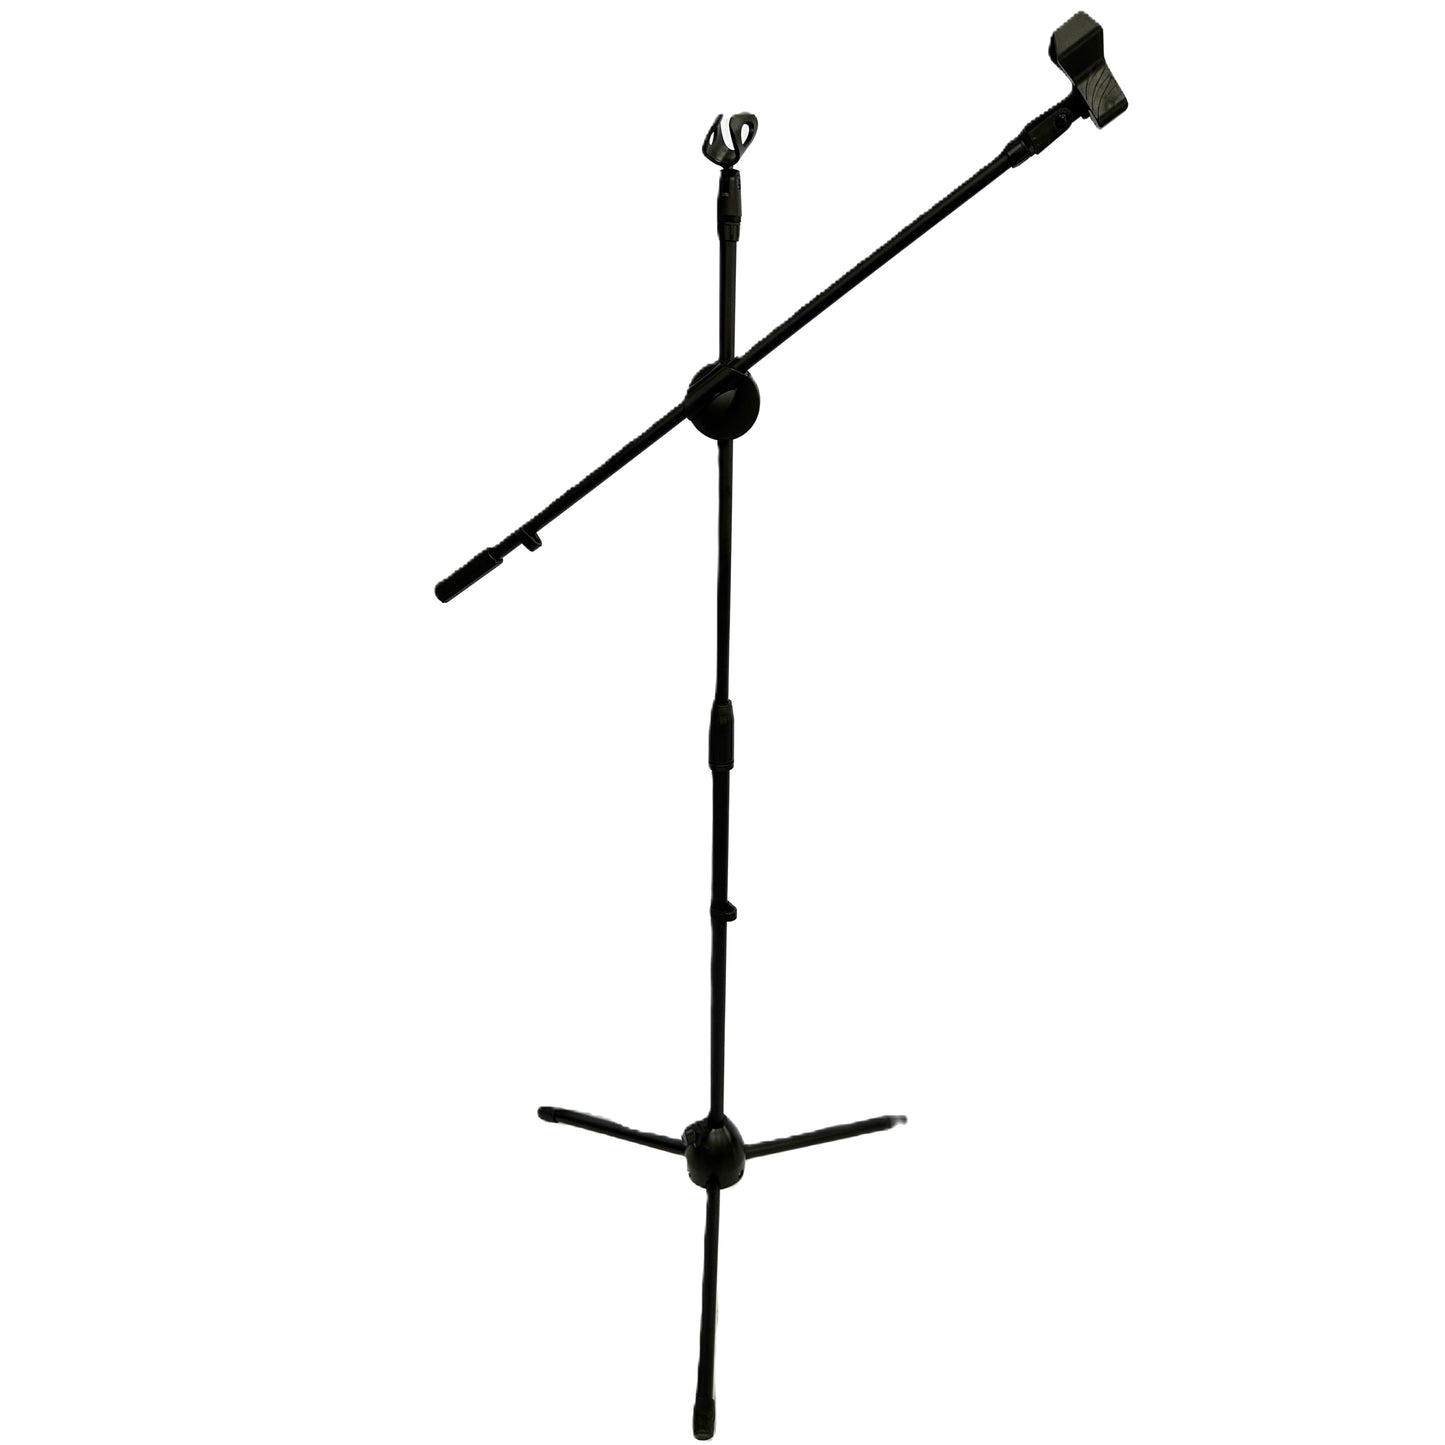 Pedestal Doble de Piso para Microfono color Negro